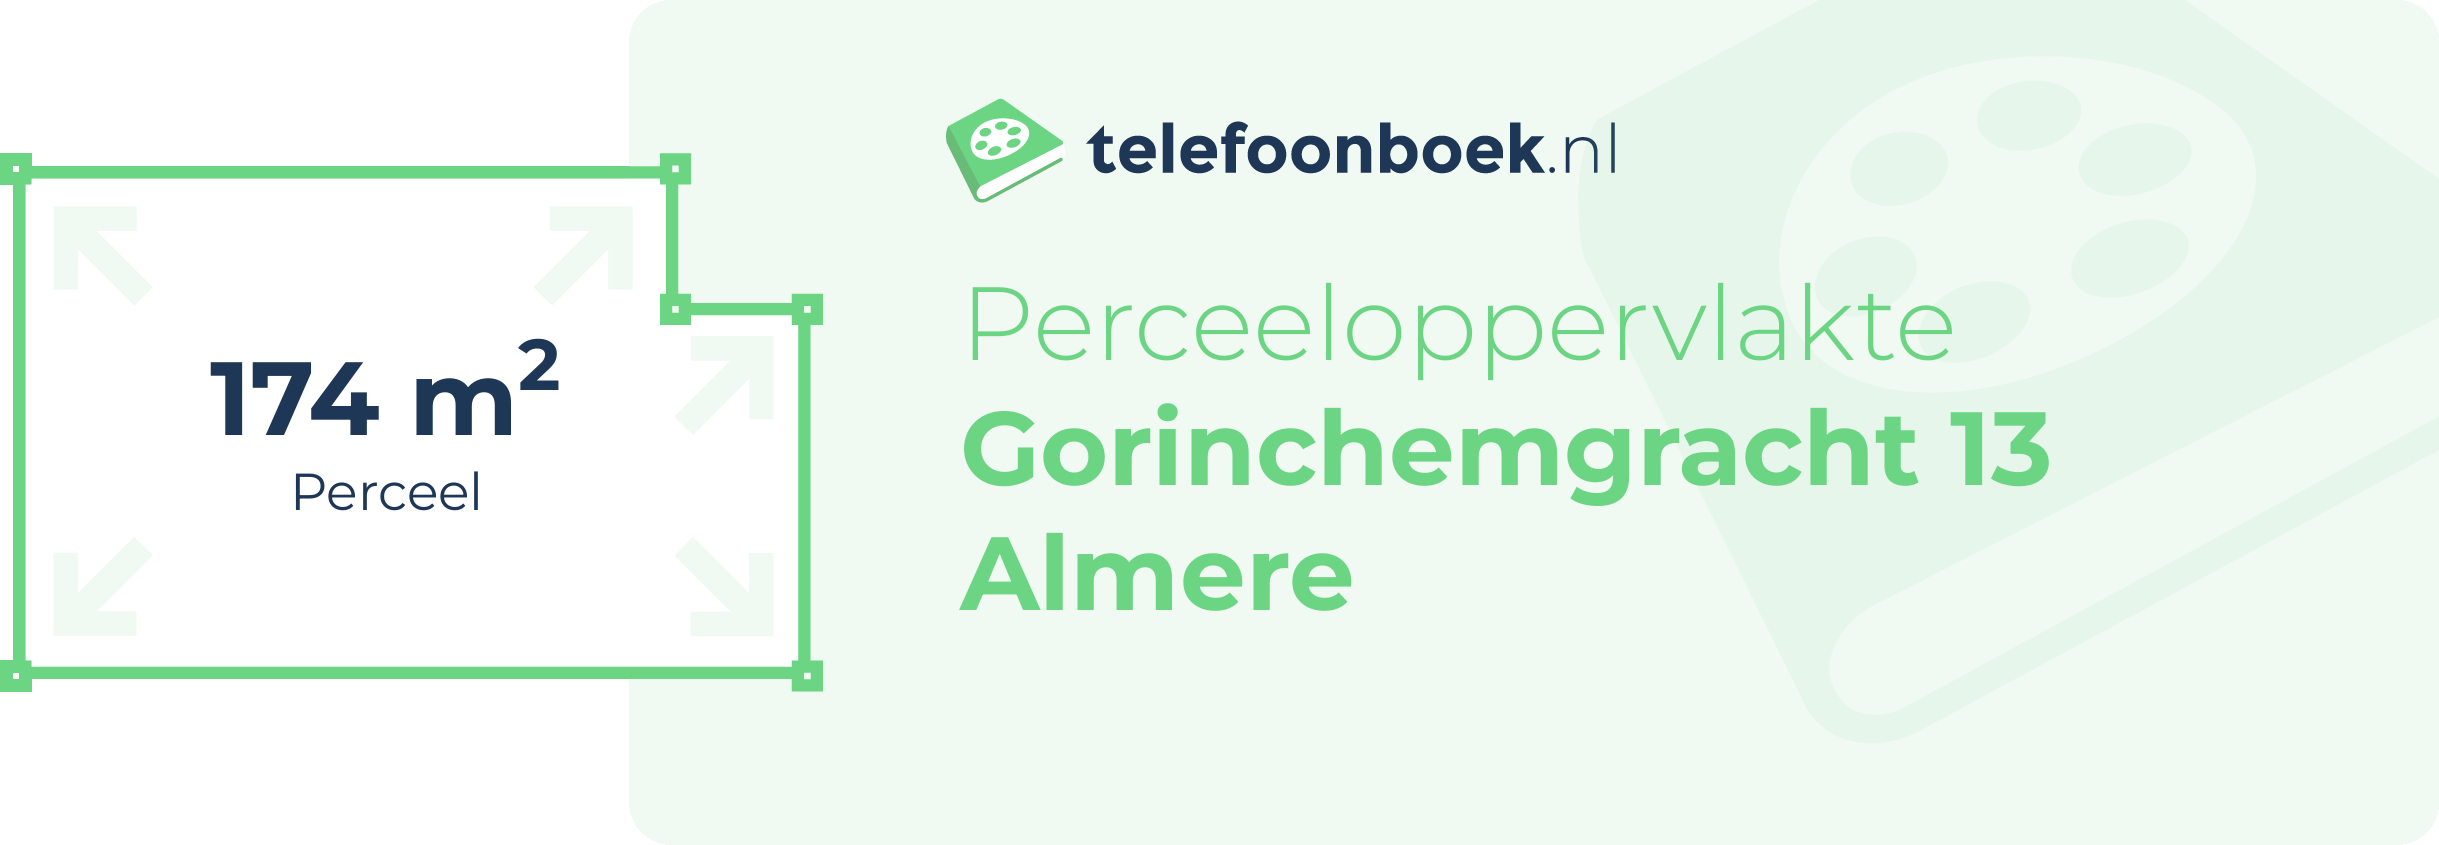 Perceeloppervlakte Gorinchemgracht 13 Almere